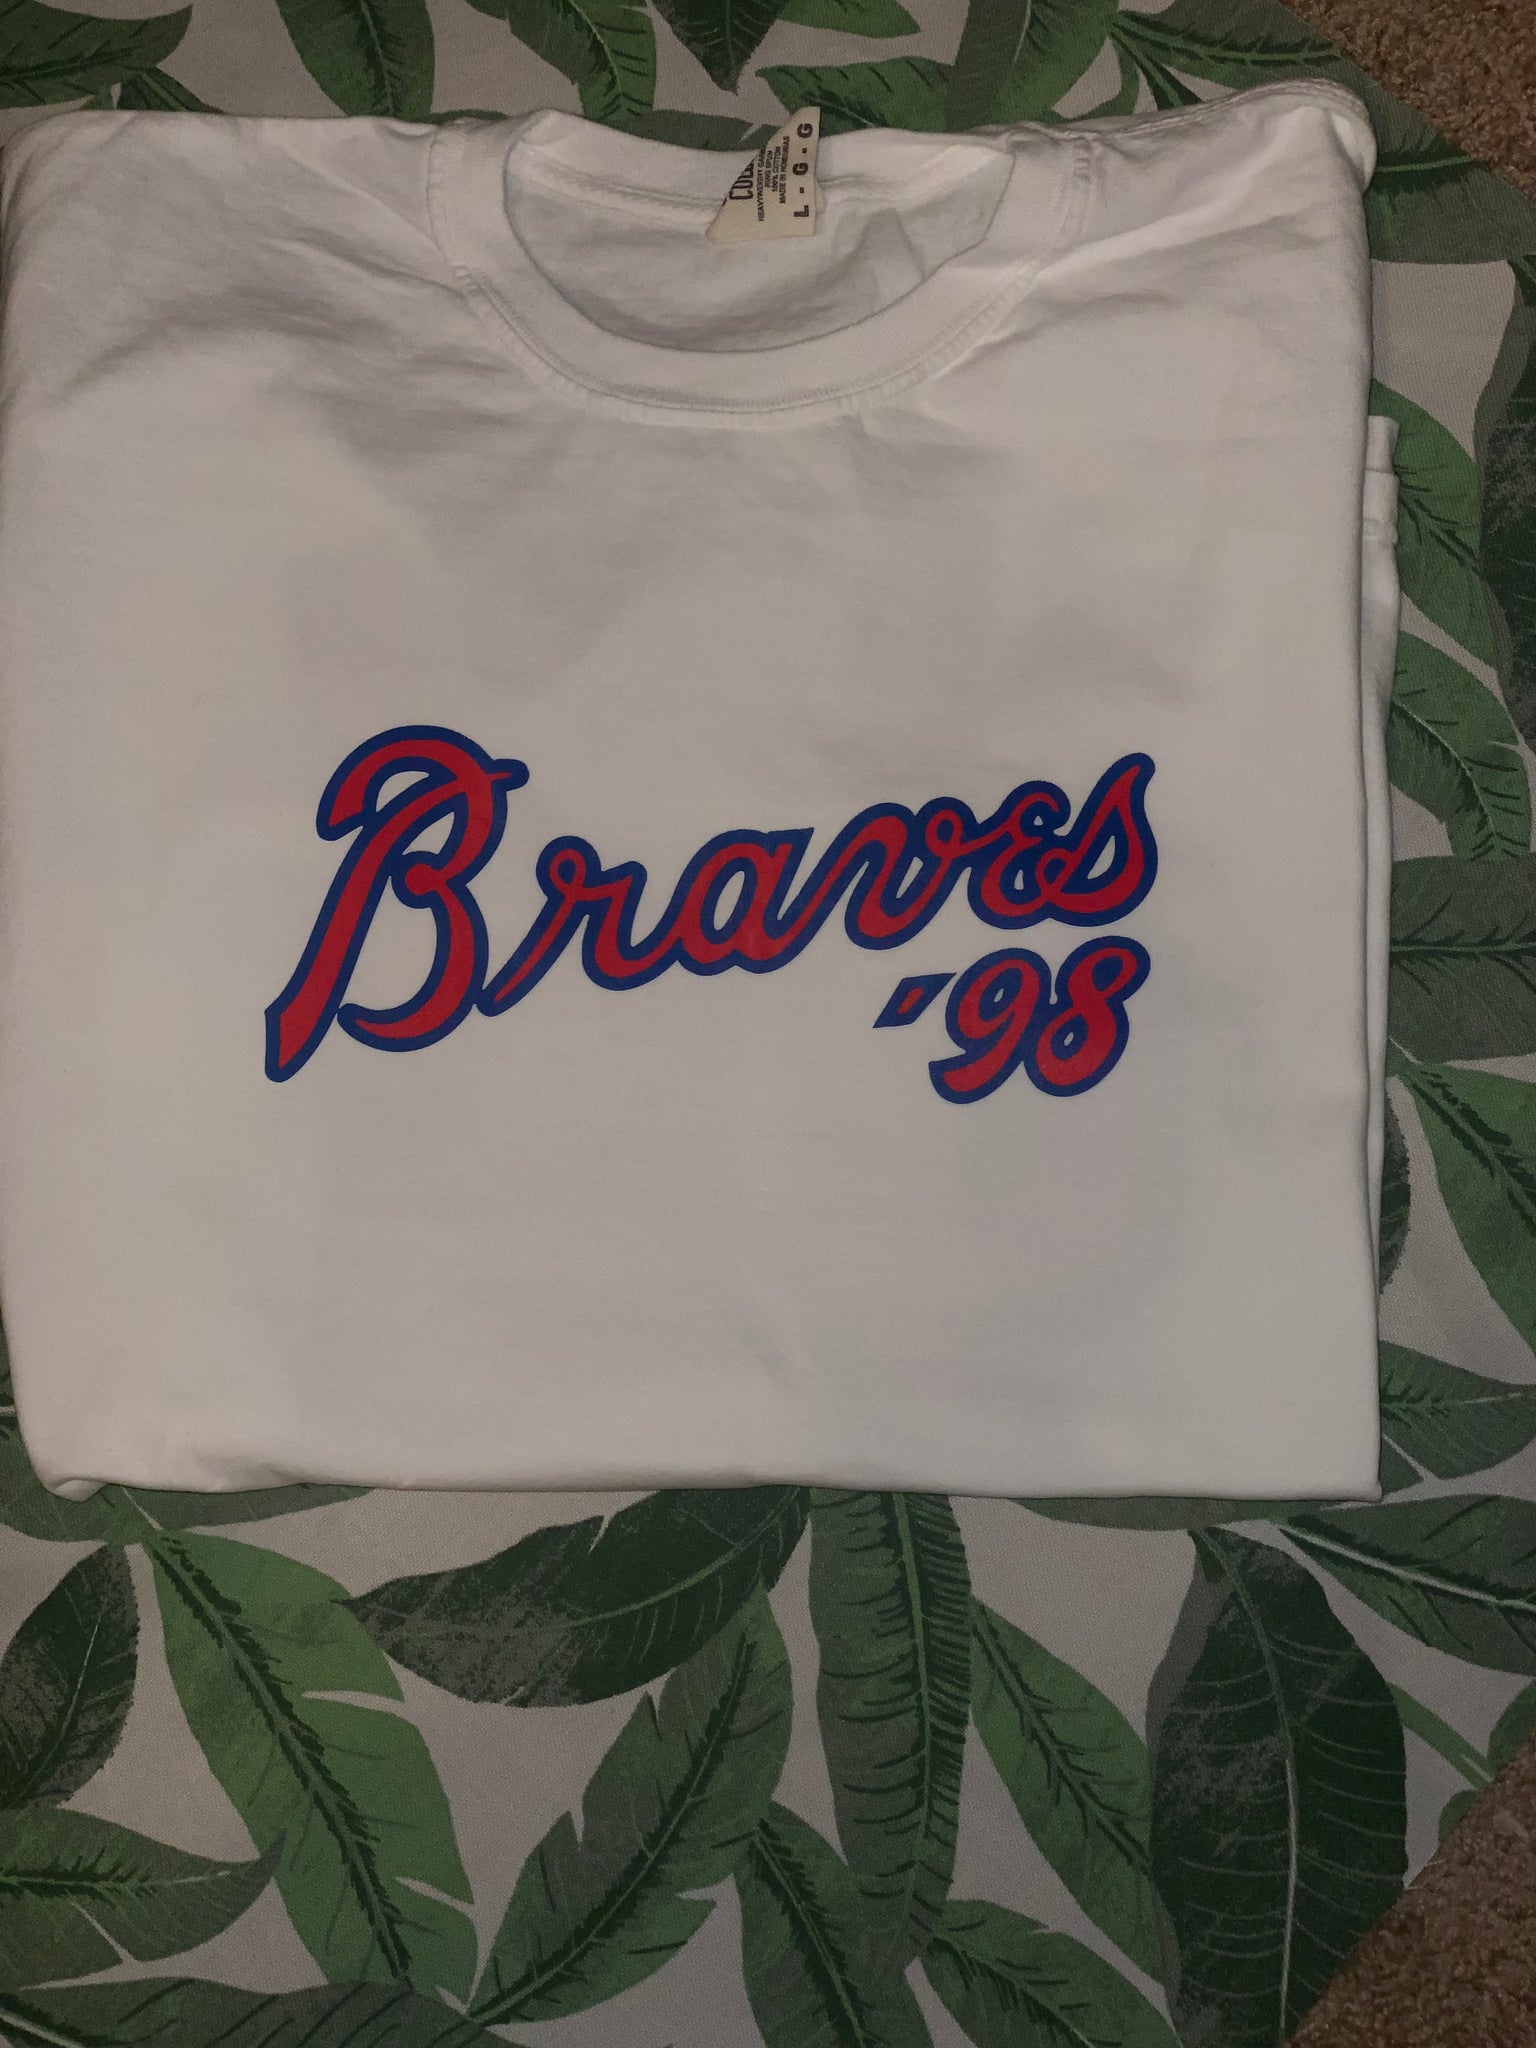 AGCA LLC Country Music Concert Shirt, Braves Baseball Tee, Braves Baseball Shirt, Country Music Shirt, Gift for Her, 98 Braves Shirt, Women Singer Fan T